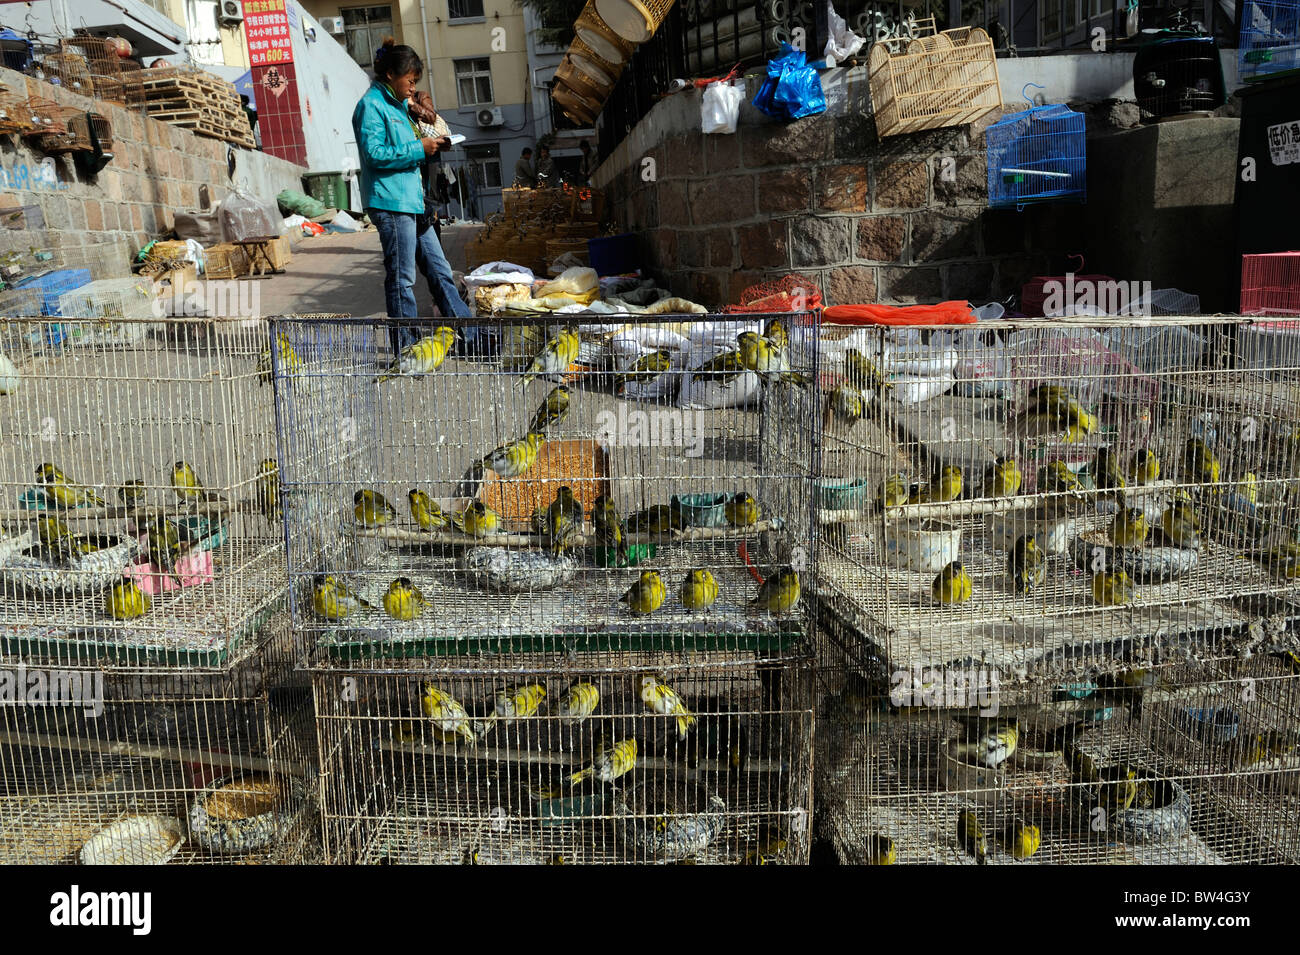 Un marché d'oiseaux à Qingdao, province de Shandong, Chine. 12-Nov-2010 Banque D'Images